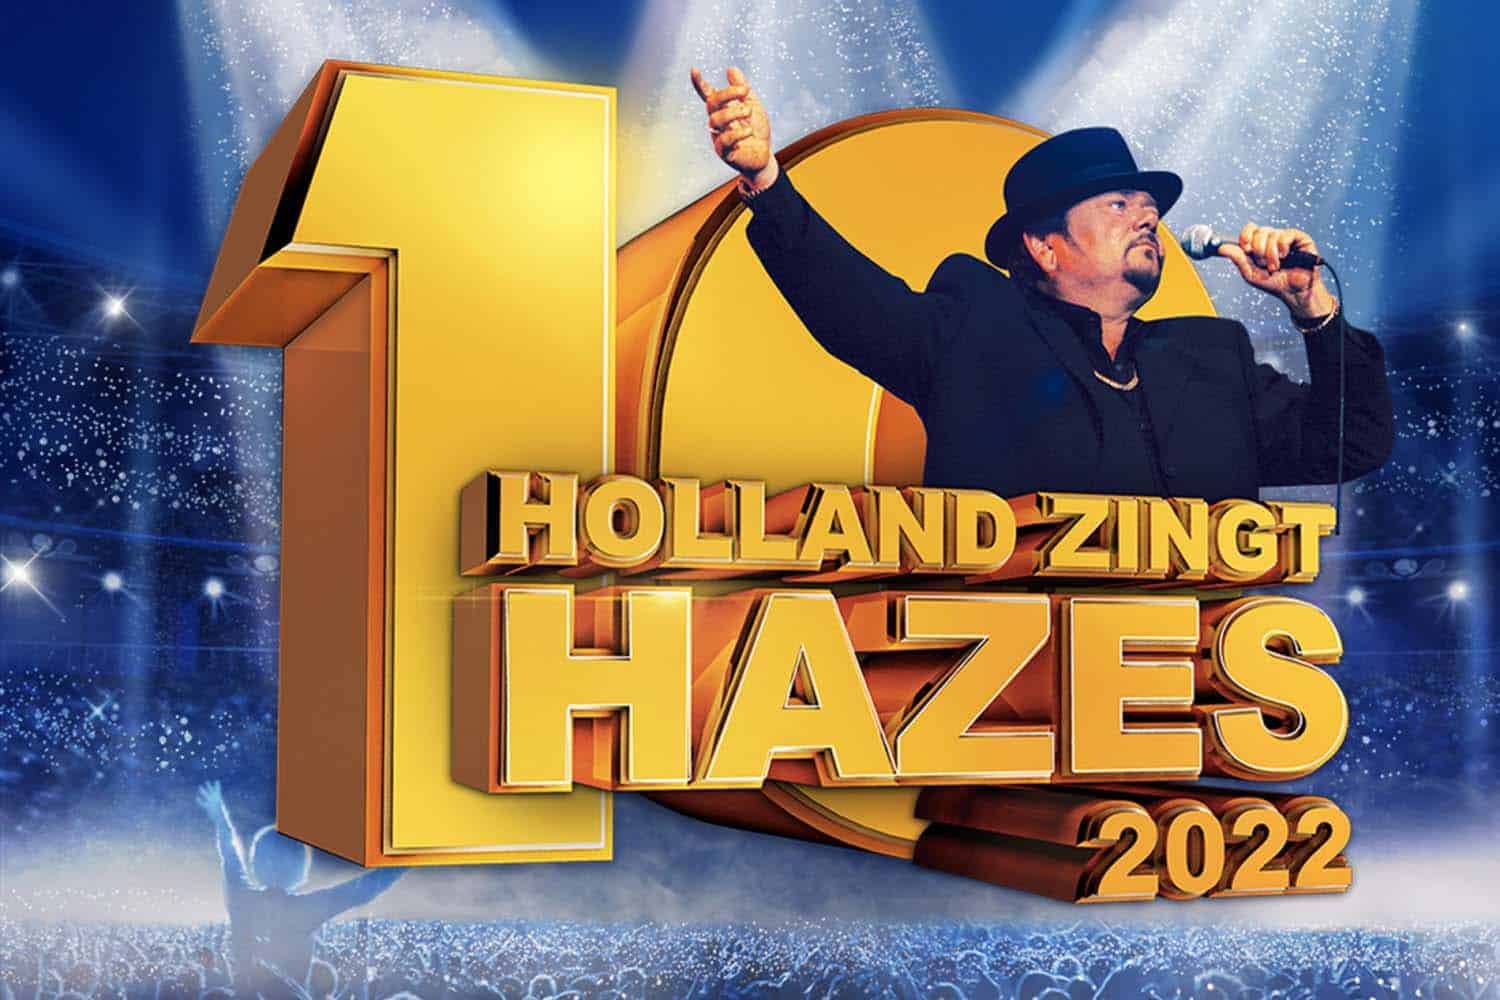 Holland zingt Hazes boekingen bij Artist Bookings